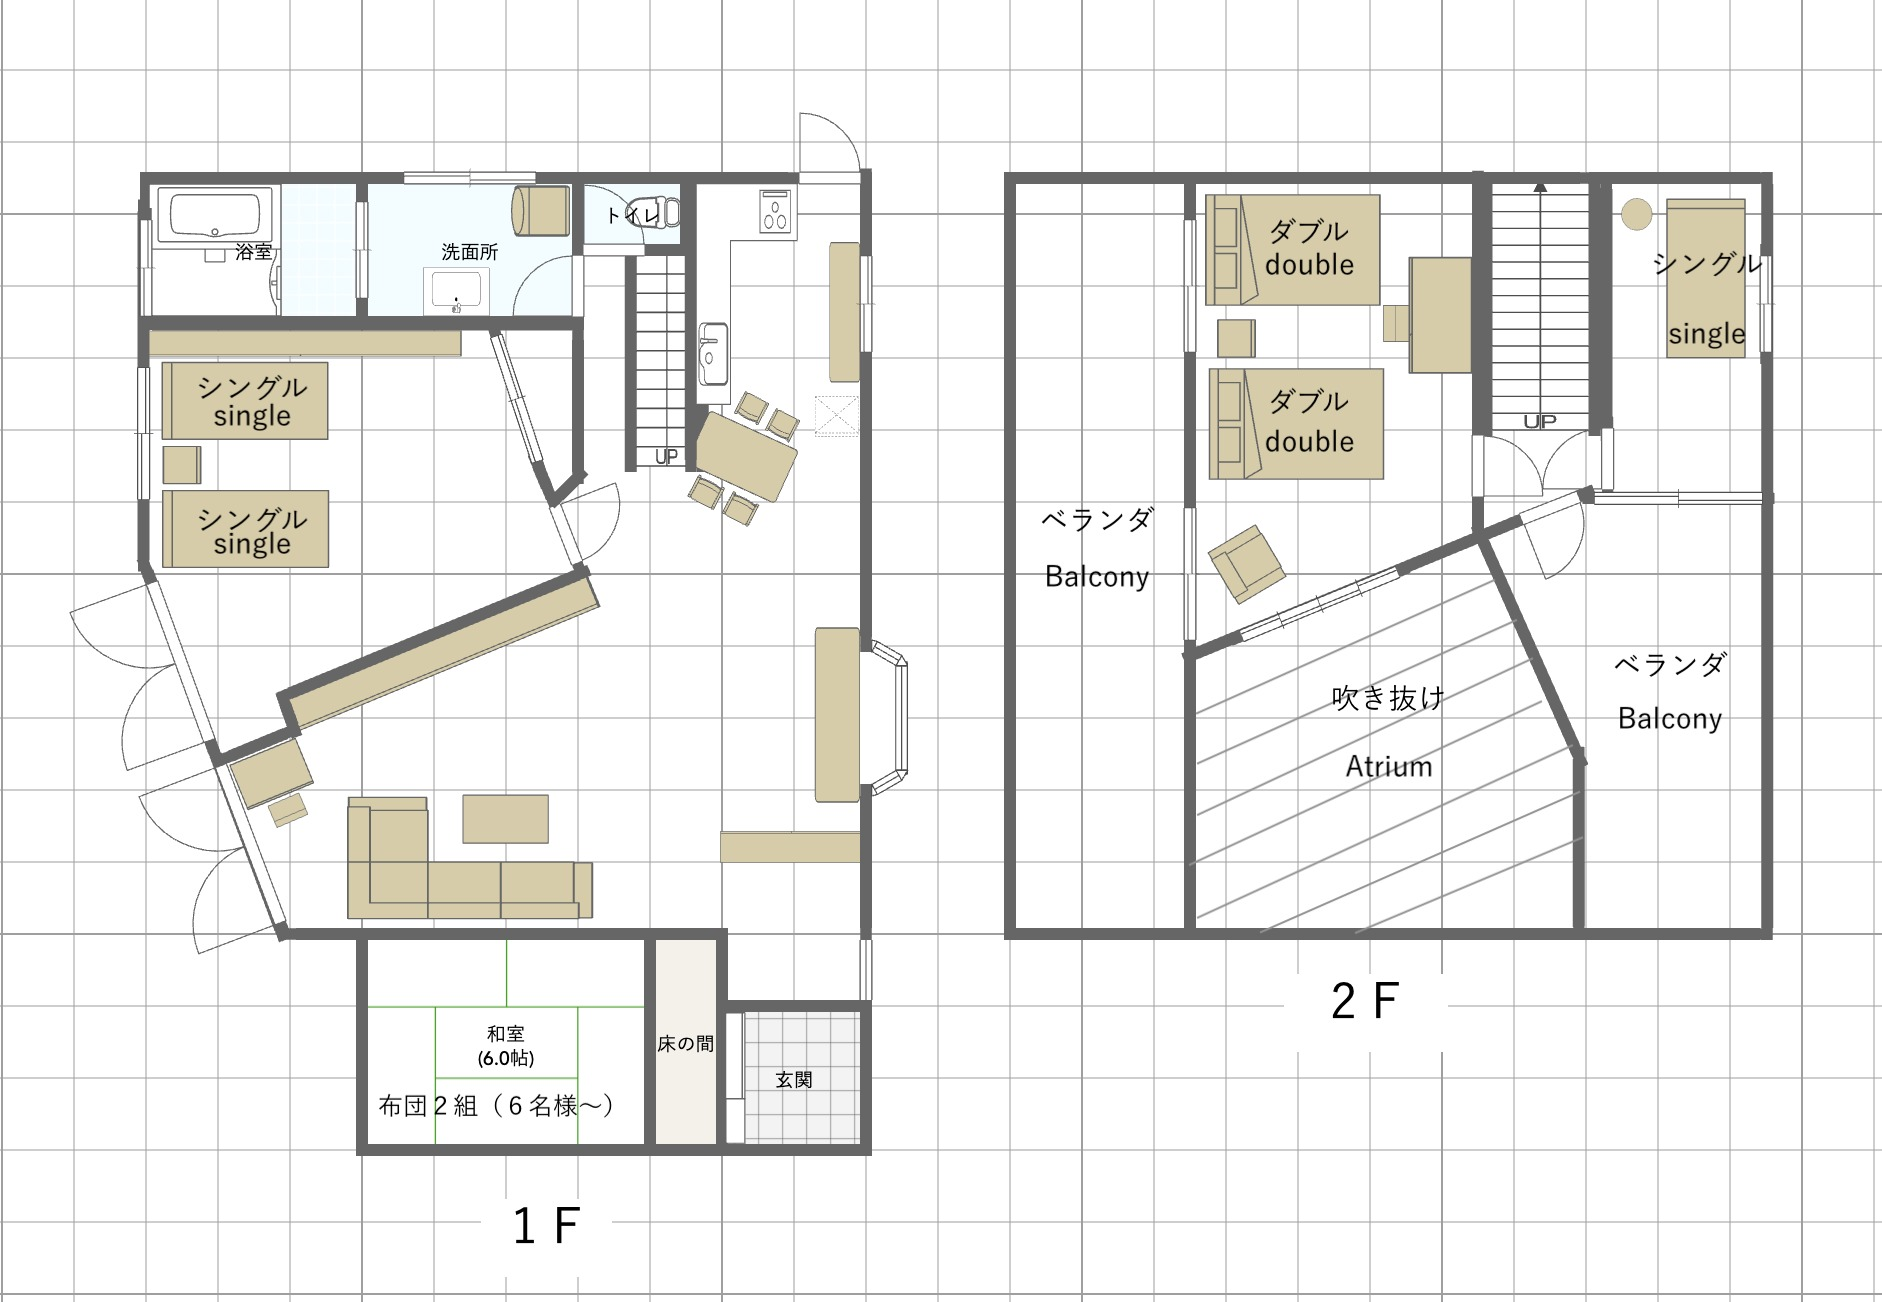 間取り図 house layout